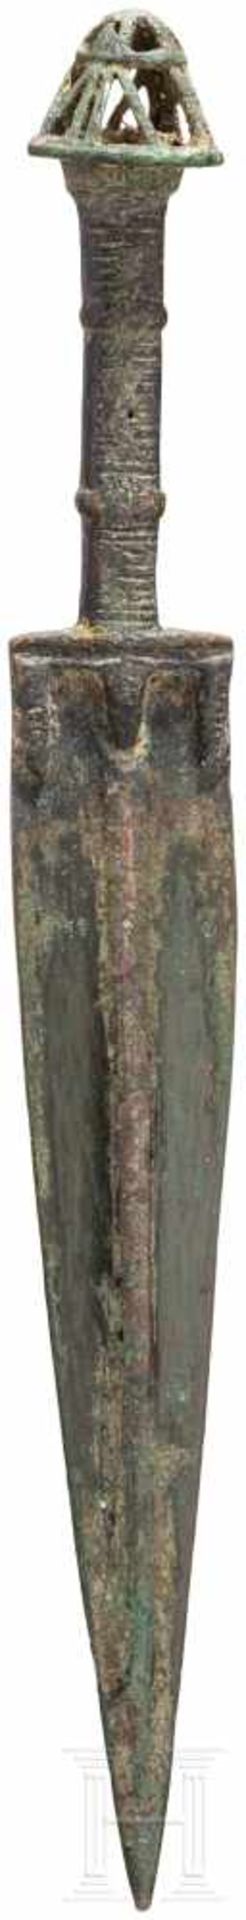 Bronzedolch, Luristan - iranisch, Ende 2. - frühes 1. Jtsd. v. Chr.Spitz nach unten zulaufende - Bild 2 aus 2